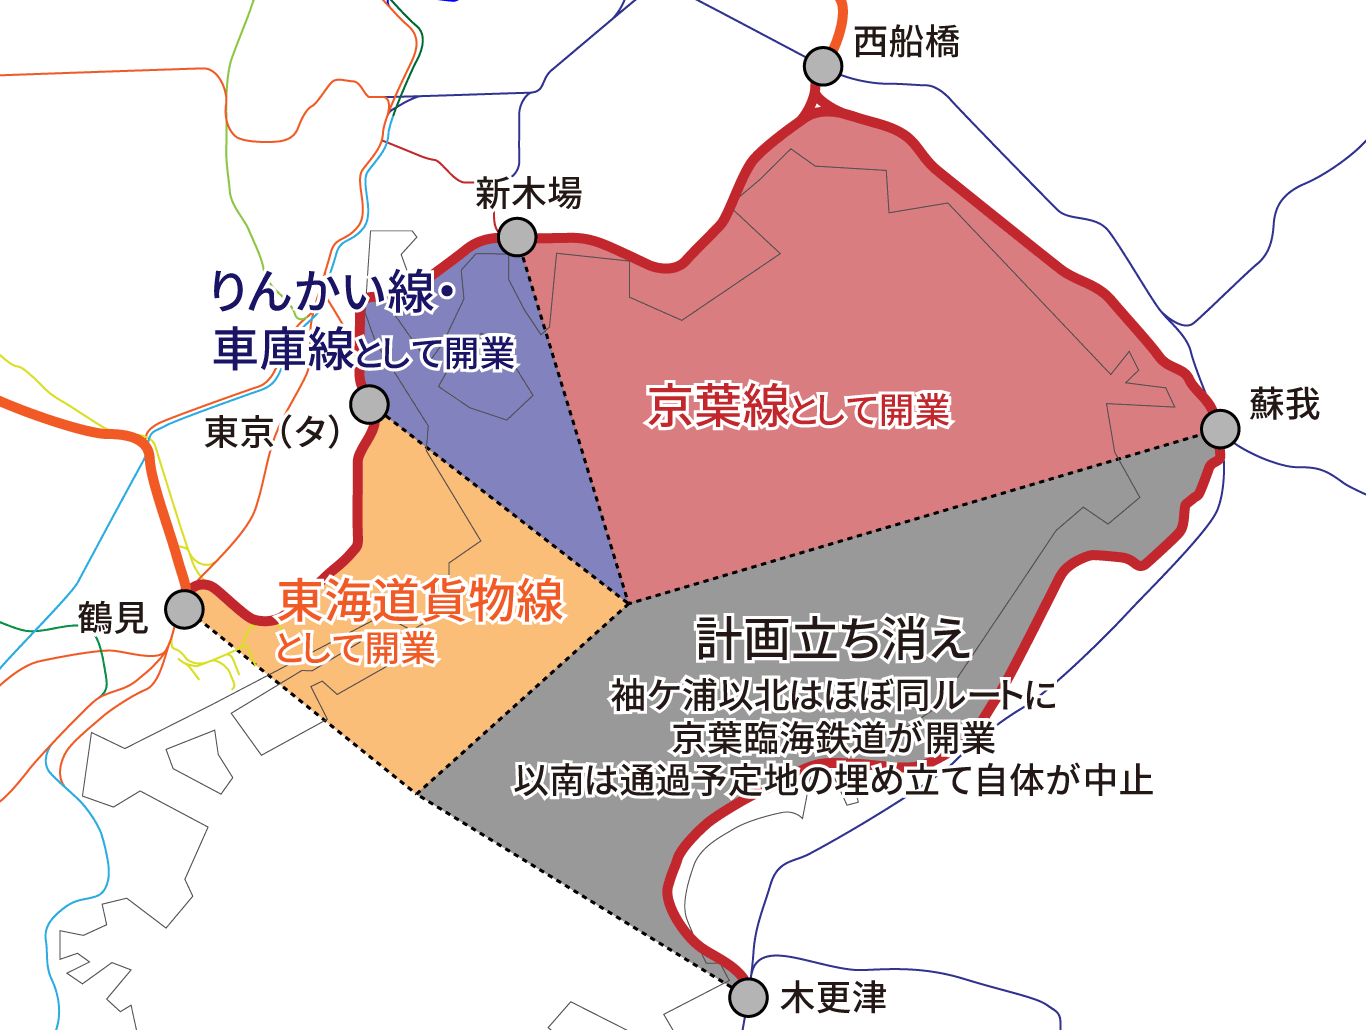 京葉線計画の現状